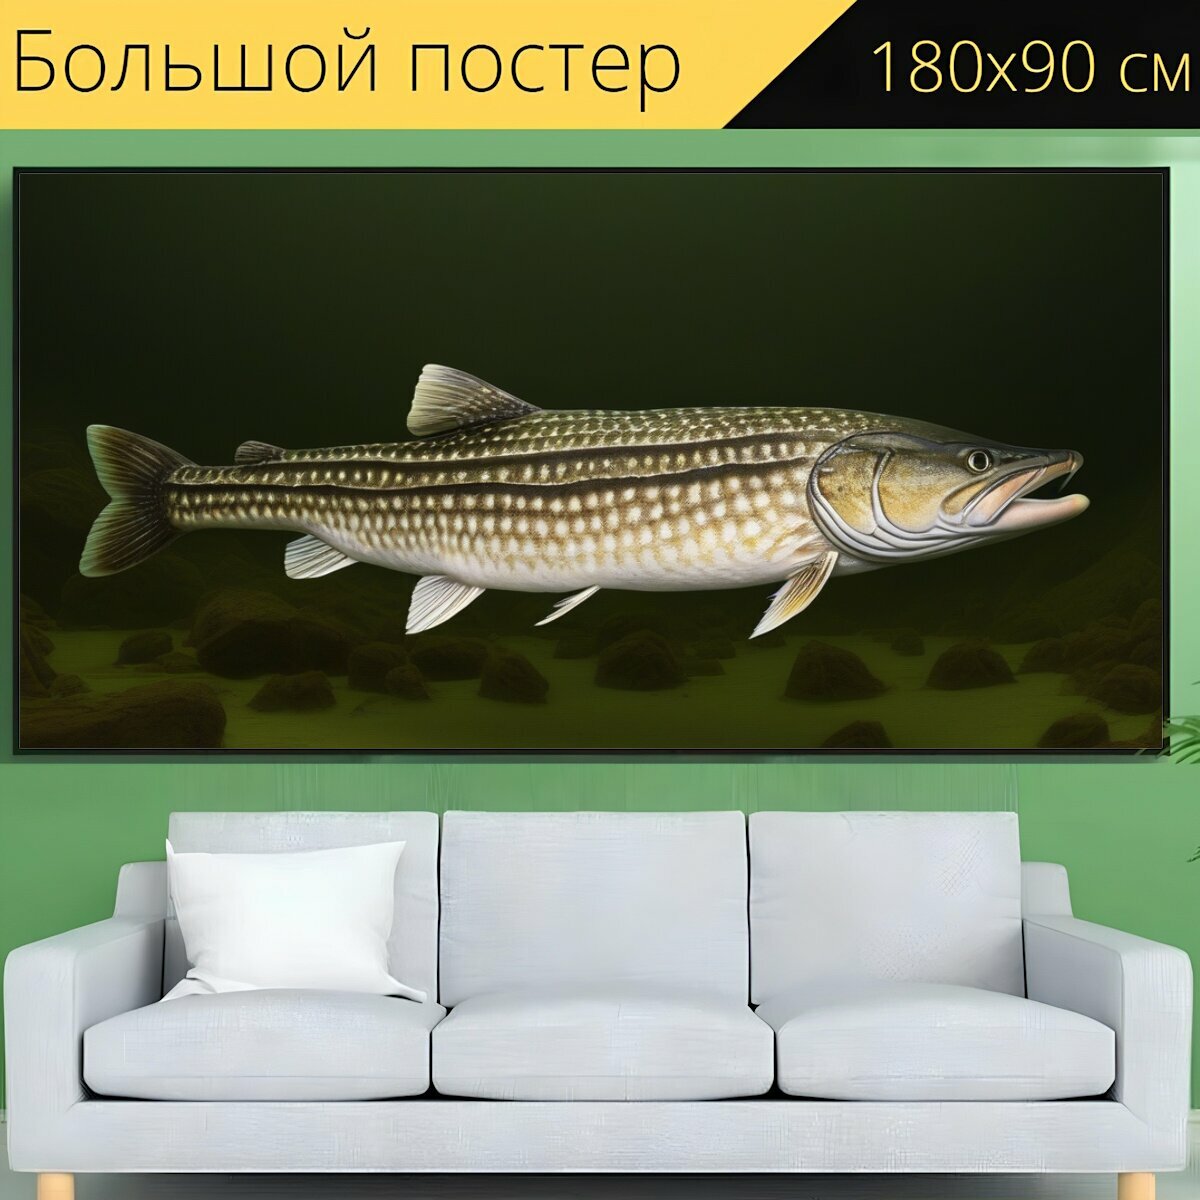 Большой постер любителям природы "Рыбы, щука, на дне" 180 x 90 см. для интерьера на стену